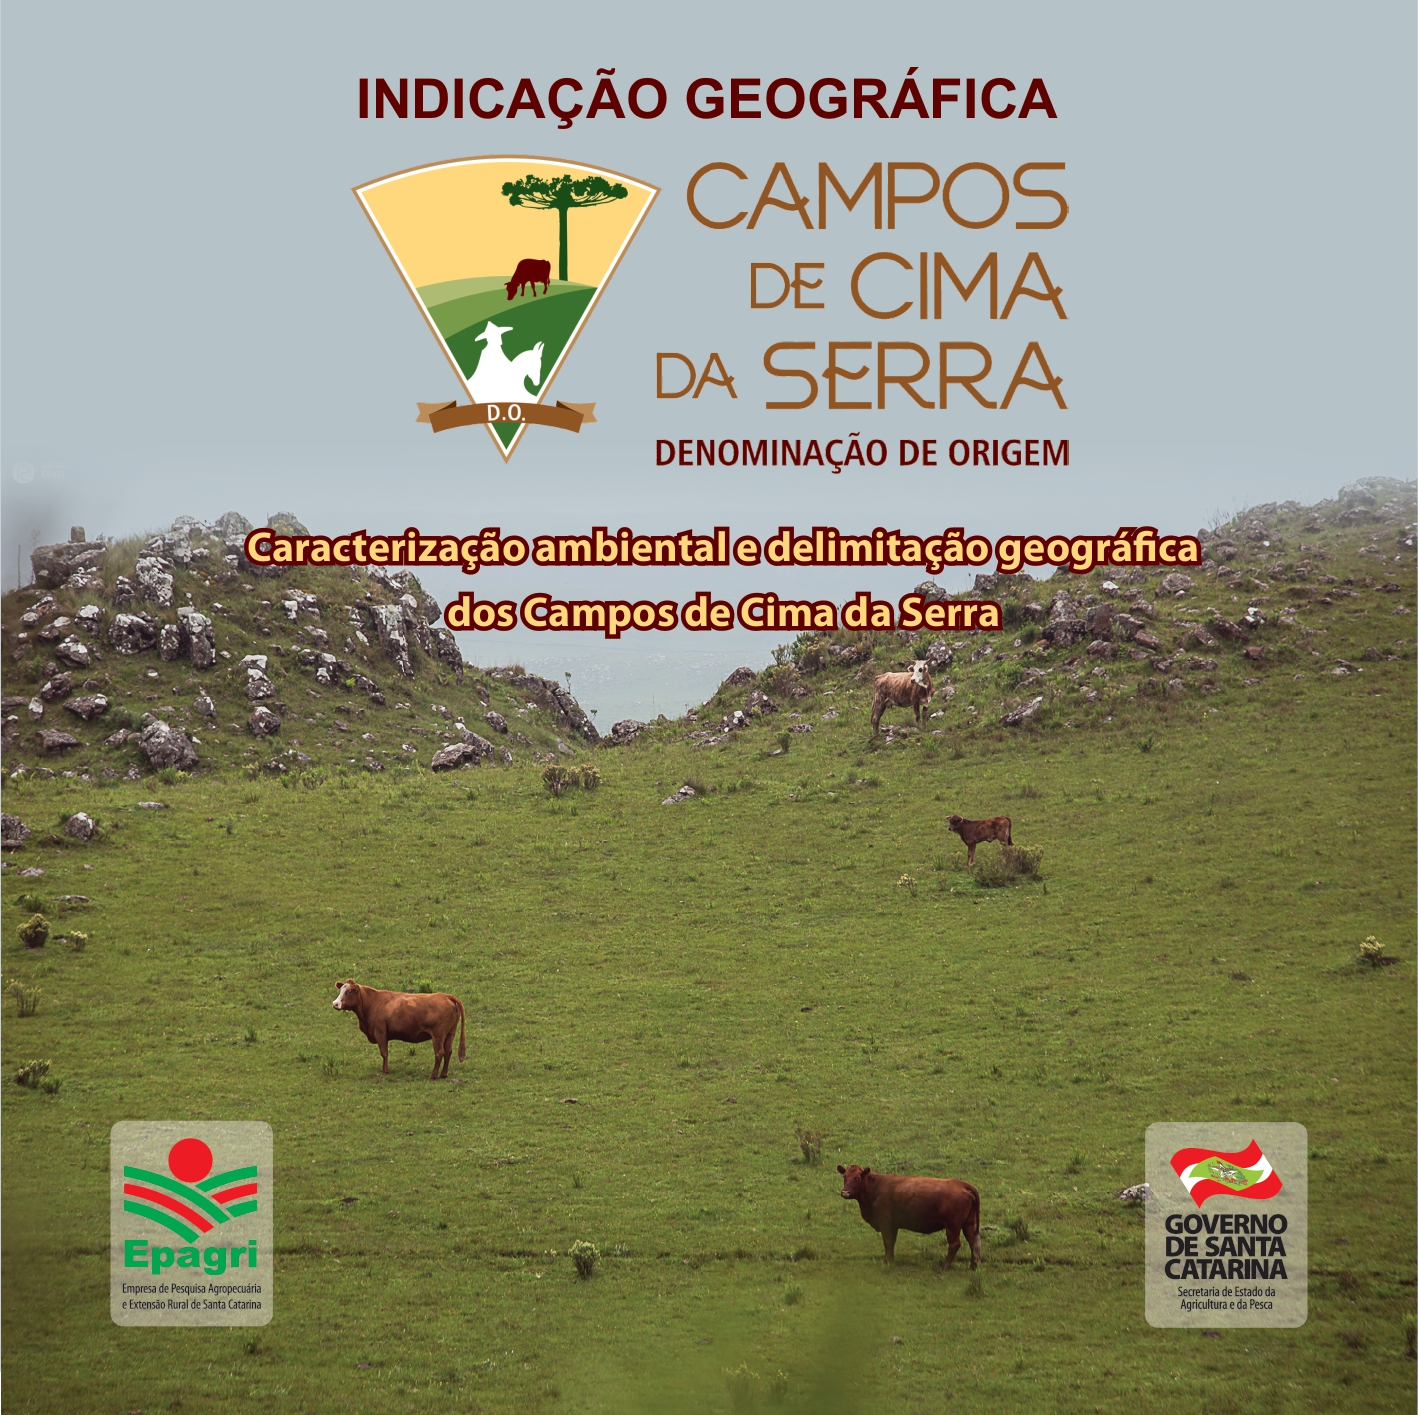 					Visualizar n. 274 (2017): Caracterização ambiental e delimitação geográfica dos Campos de Cima da Serra
				